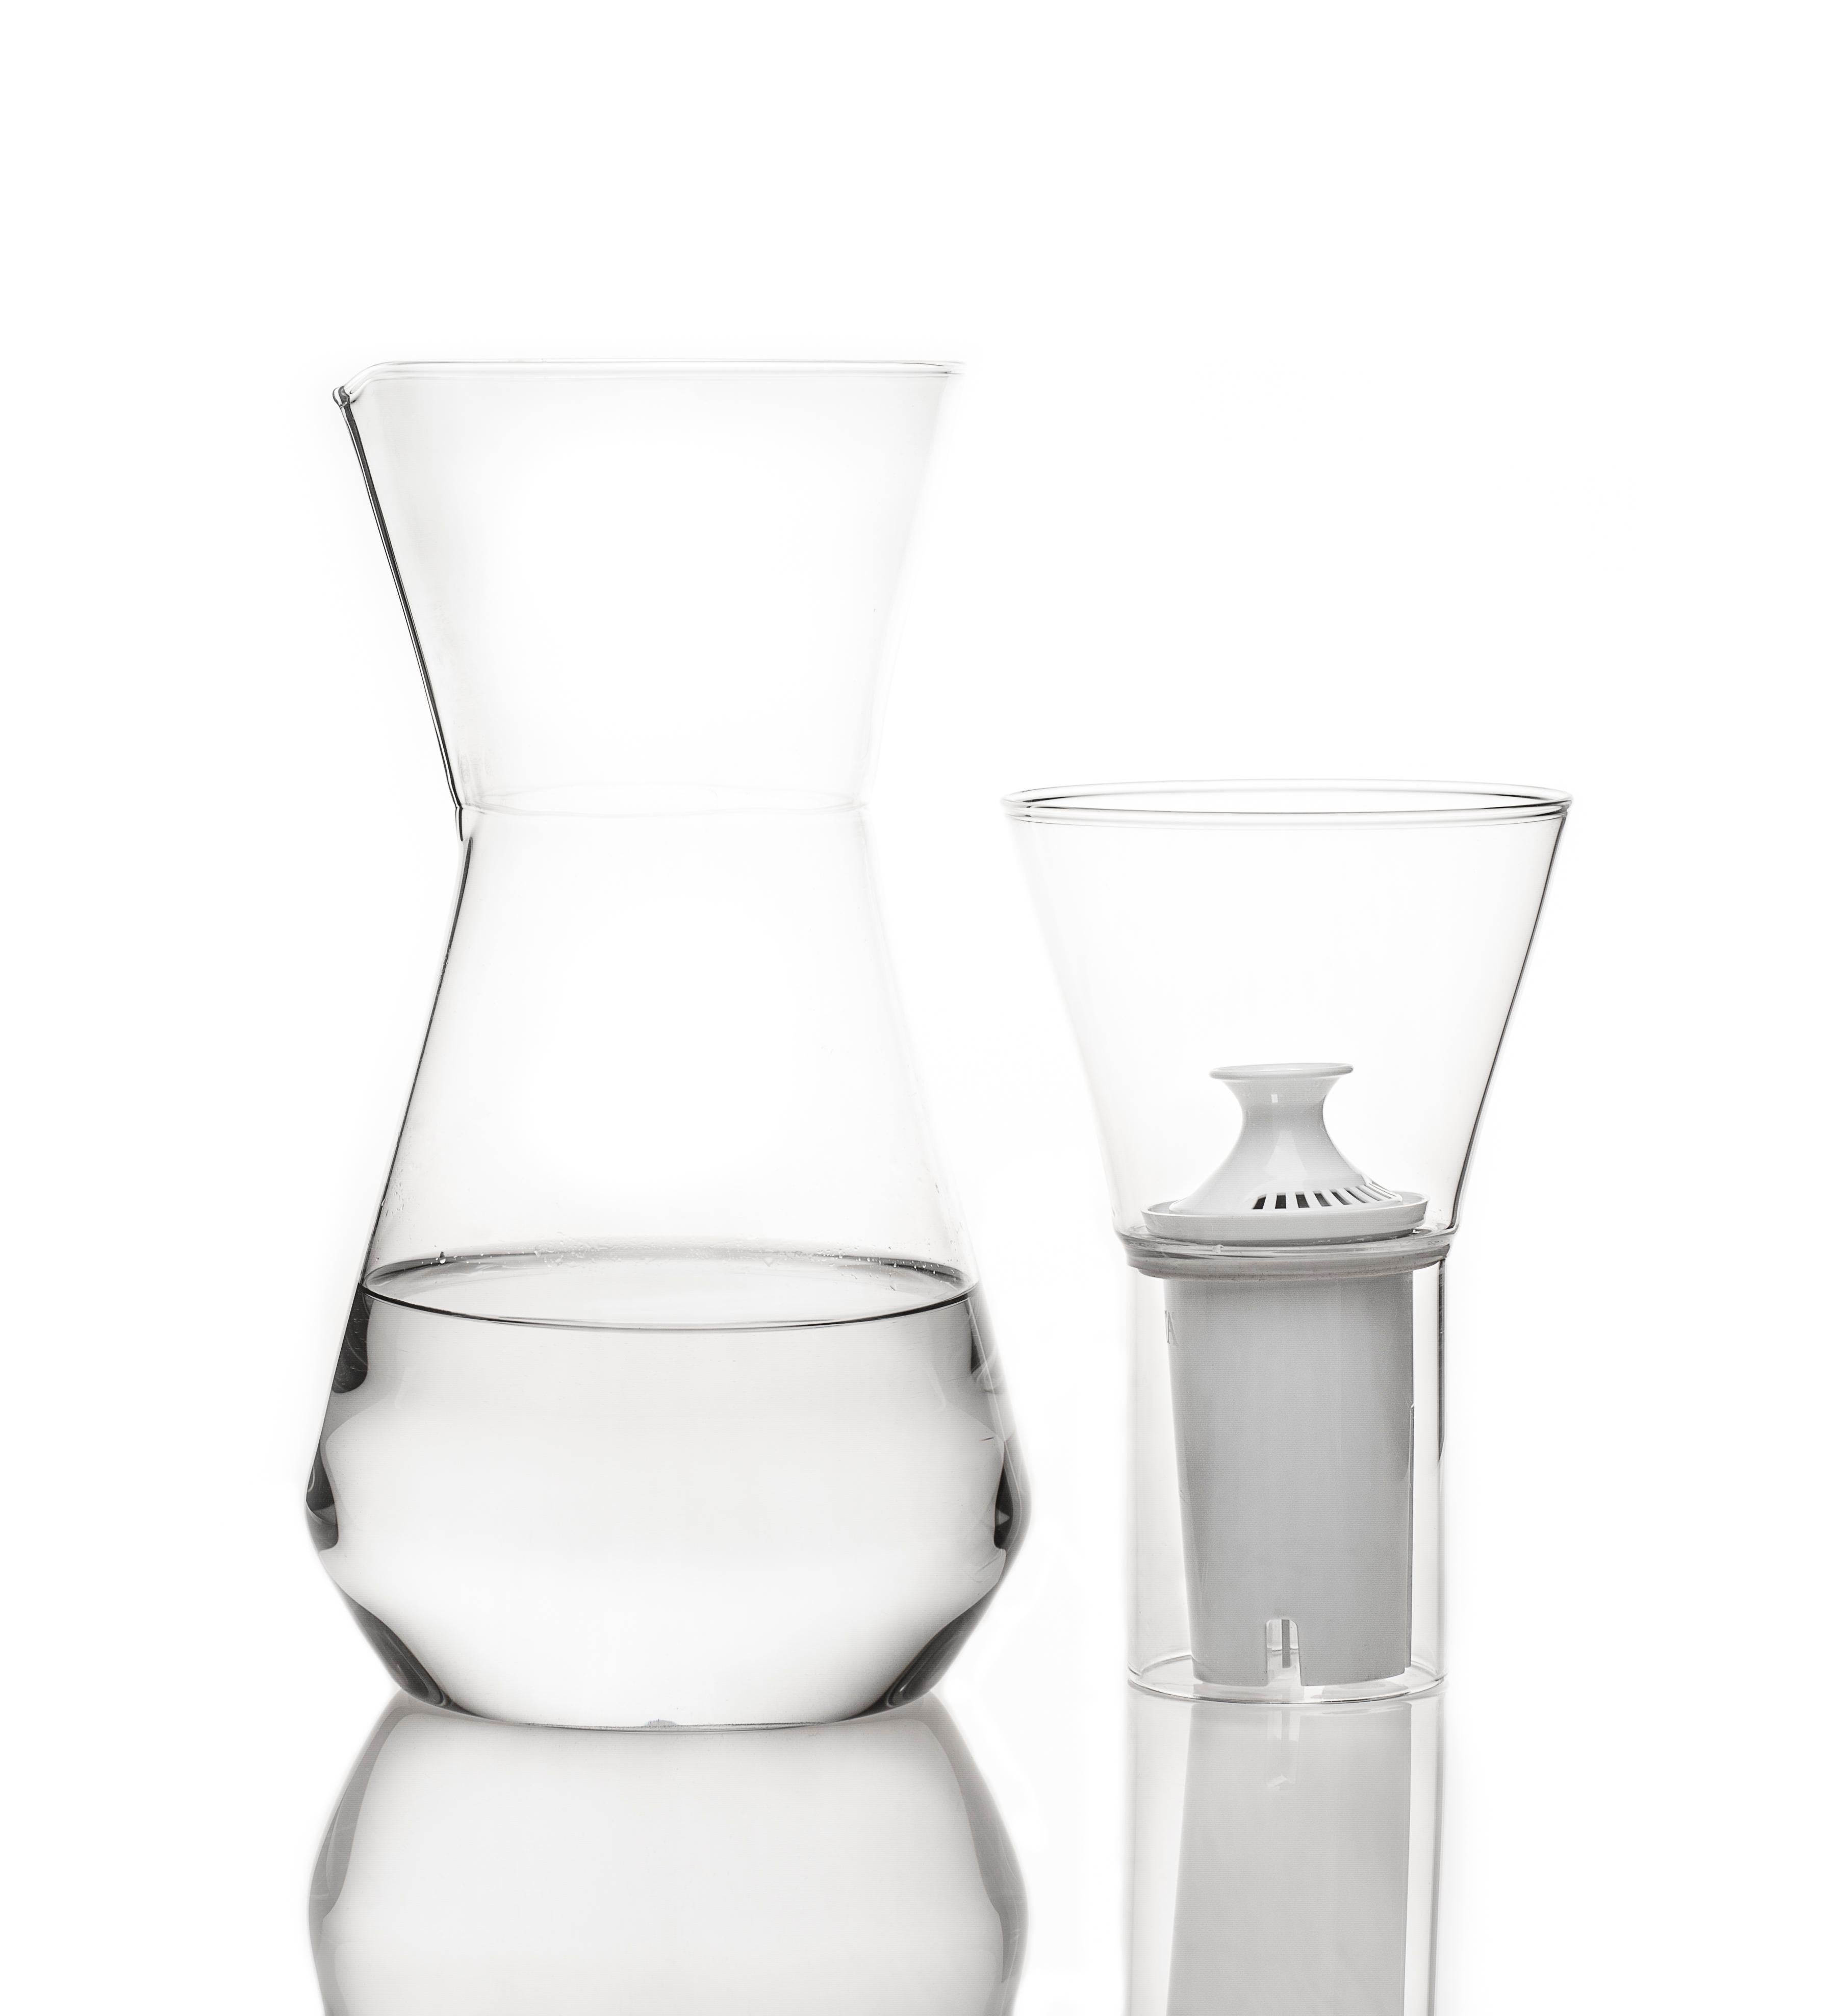 fferrone design water pitcher